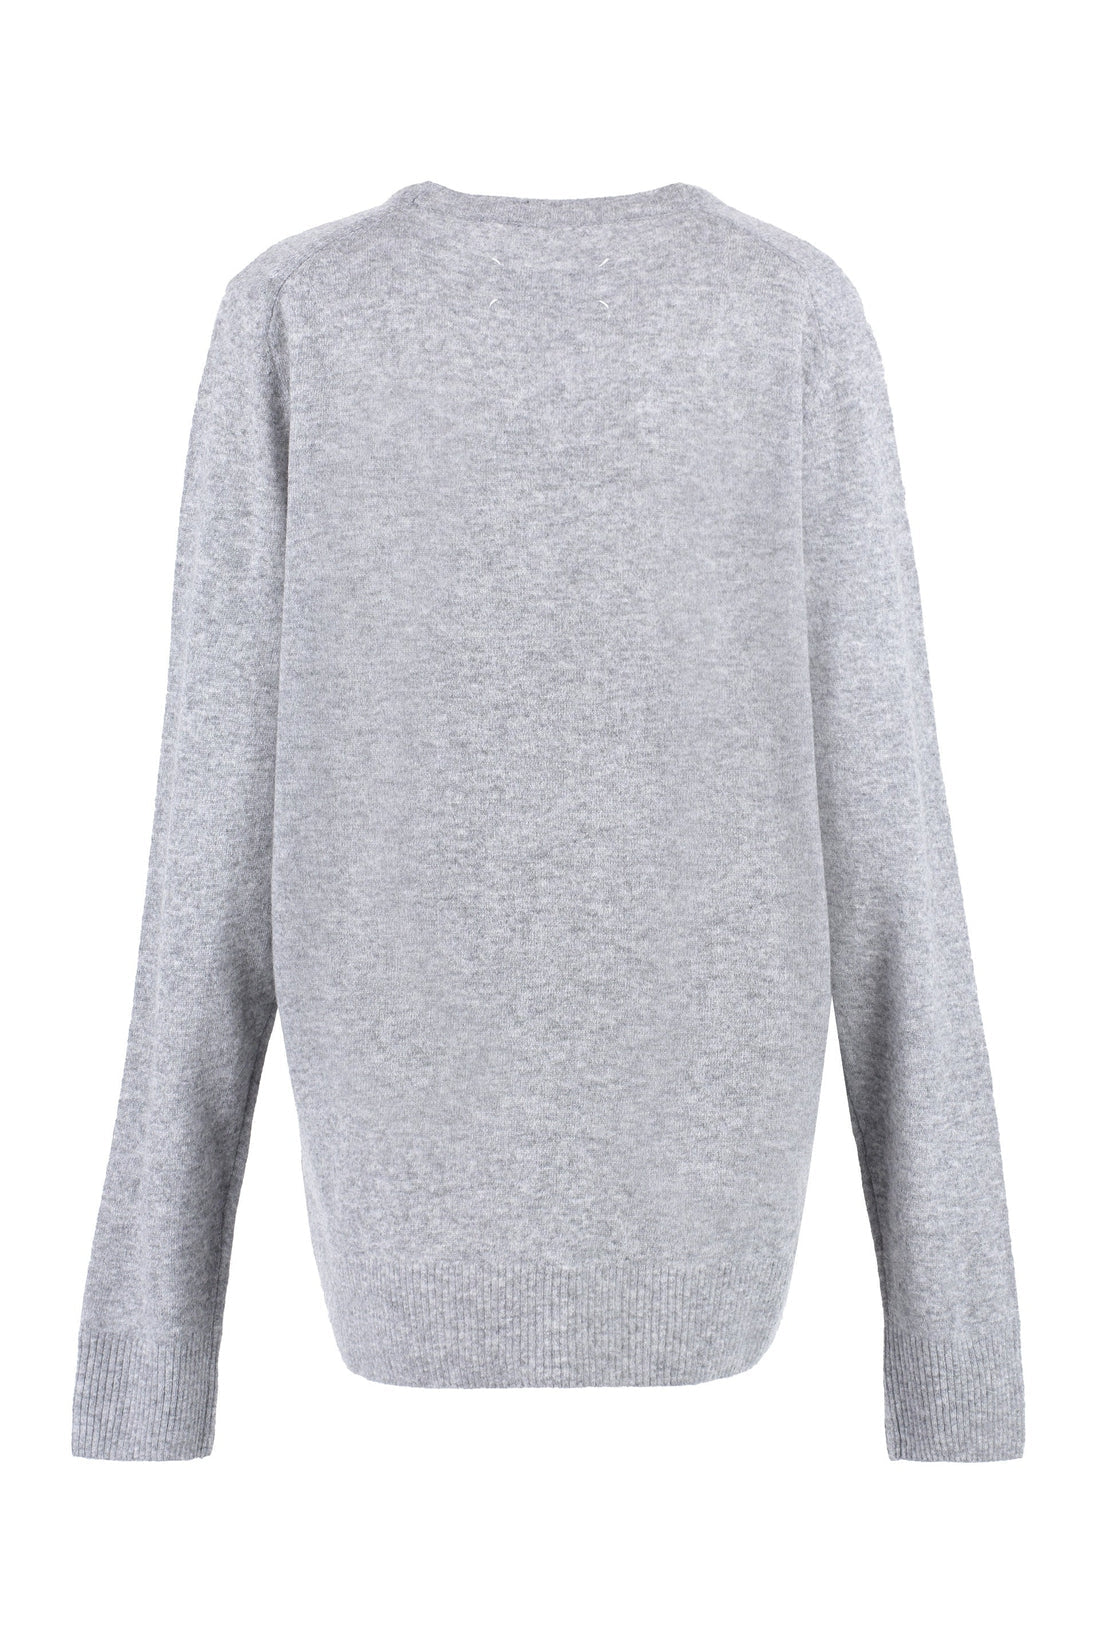 Maison Margiela-OUTLET-SALE-Crew-neck wool sweater-ARCHIVIST